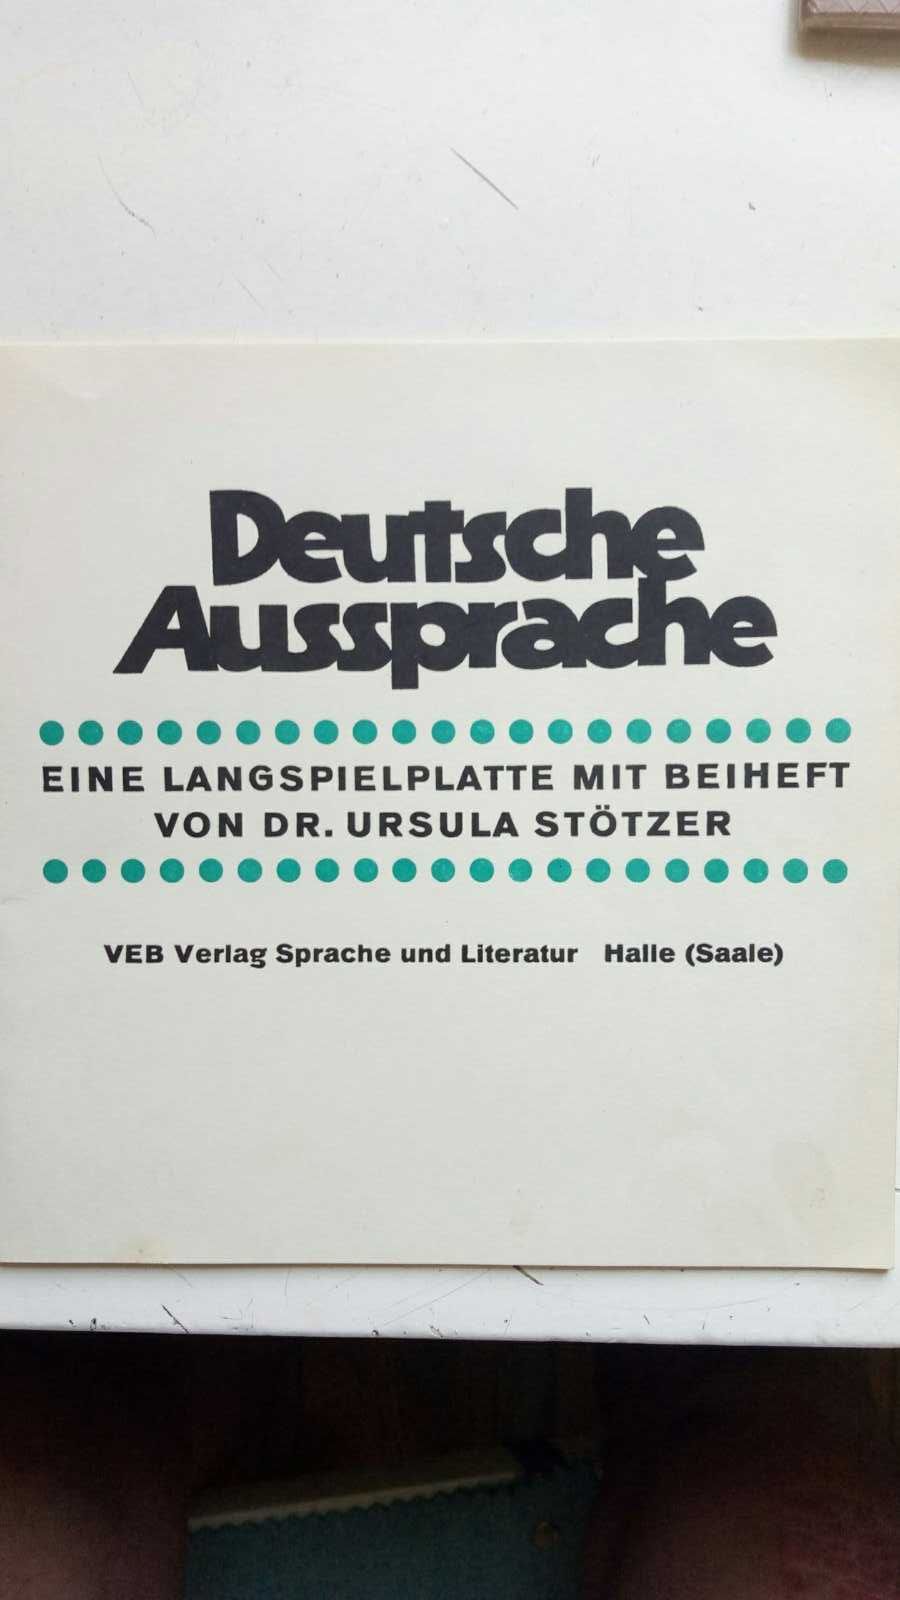 Набор виниловых пластинок с пособиями для обучения немецкому языку.